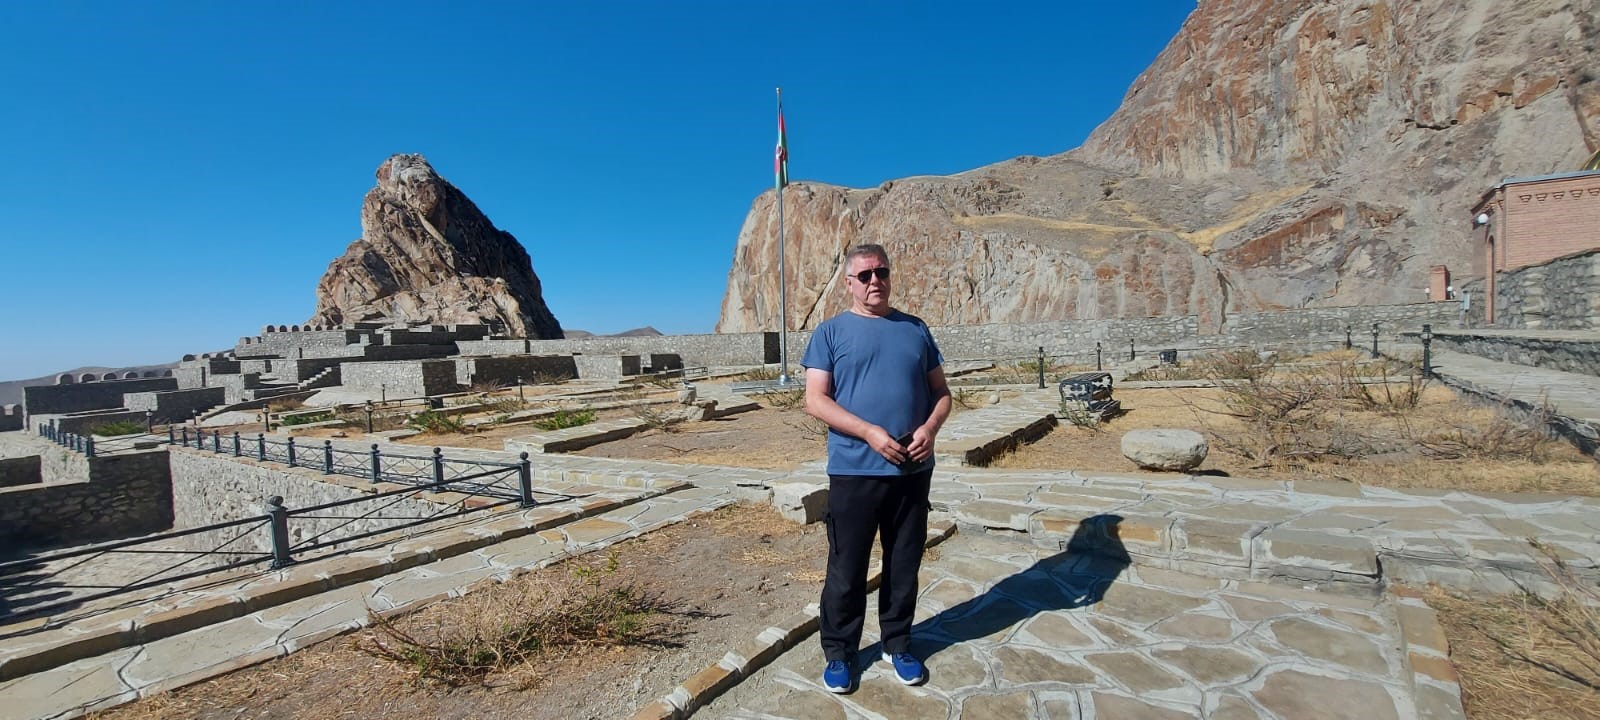 British travel blogger's impressions of Nakhchivan.